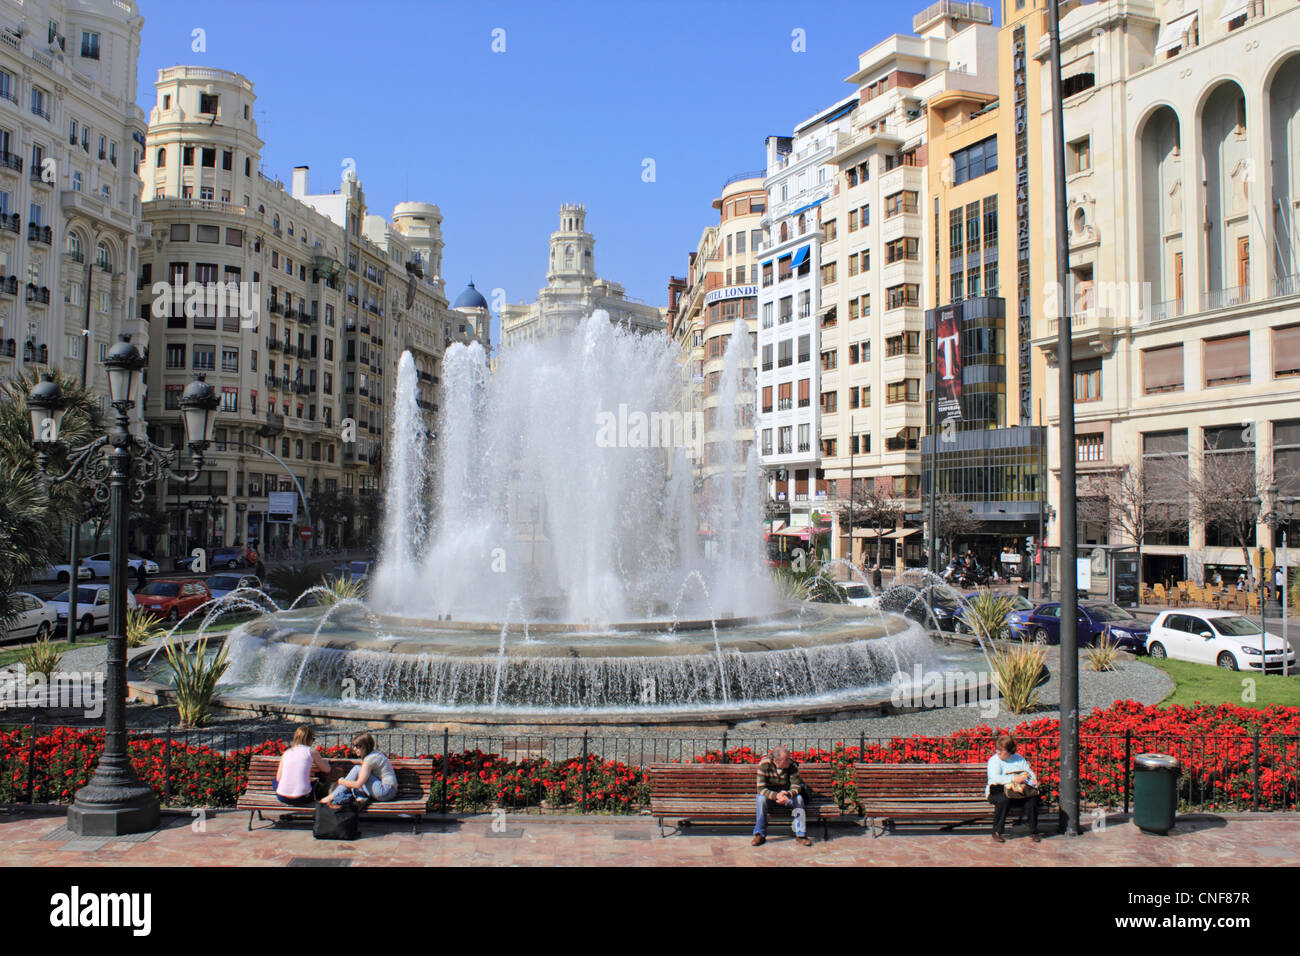 La fontaine de la Plaza de la Reina Valencia Espagne Banque D'Images